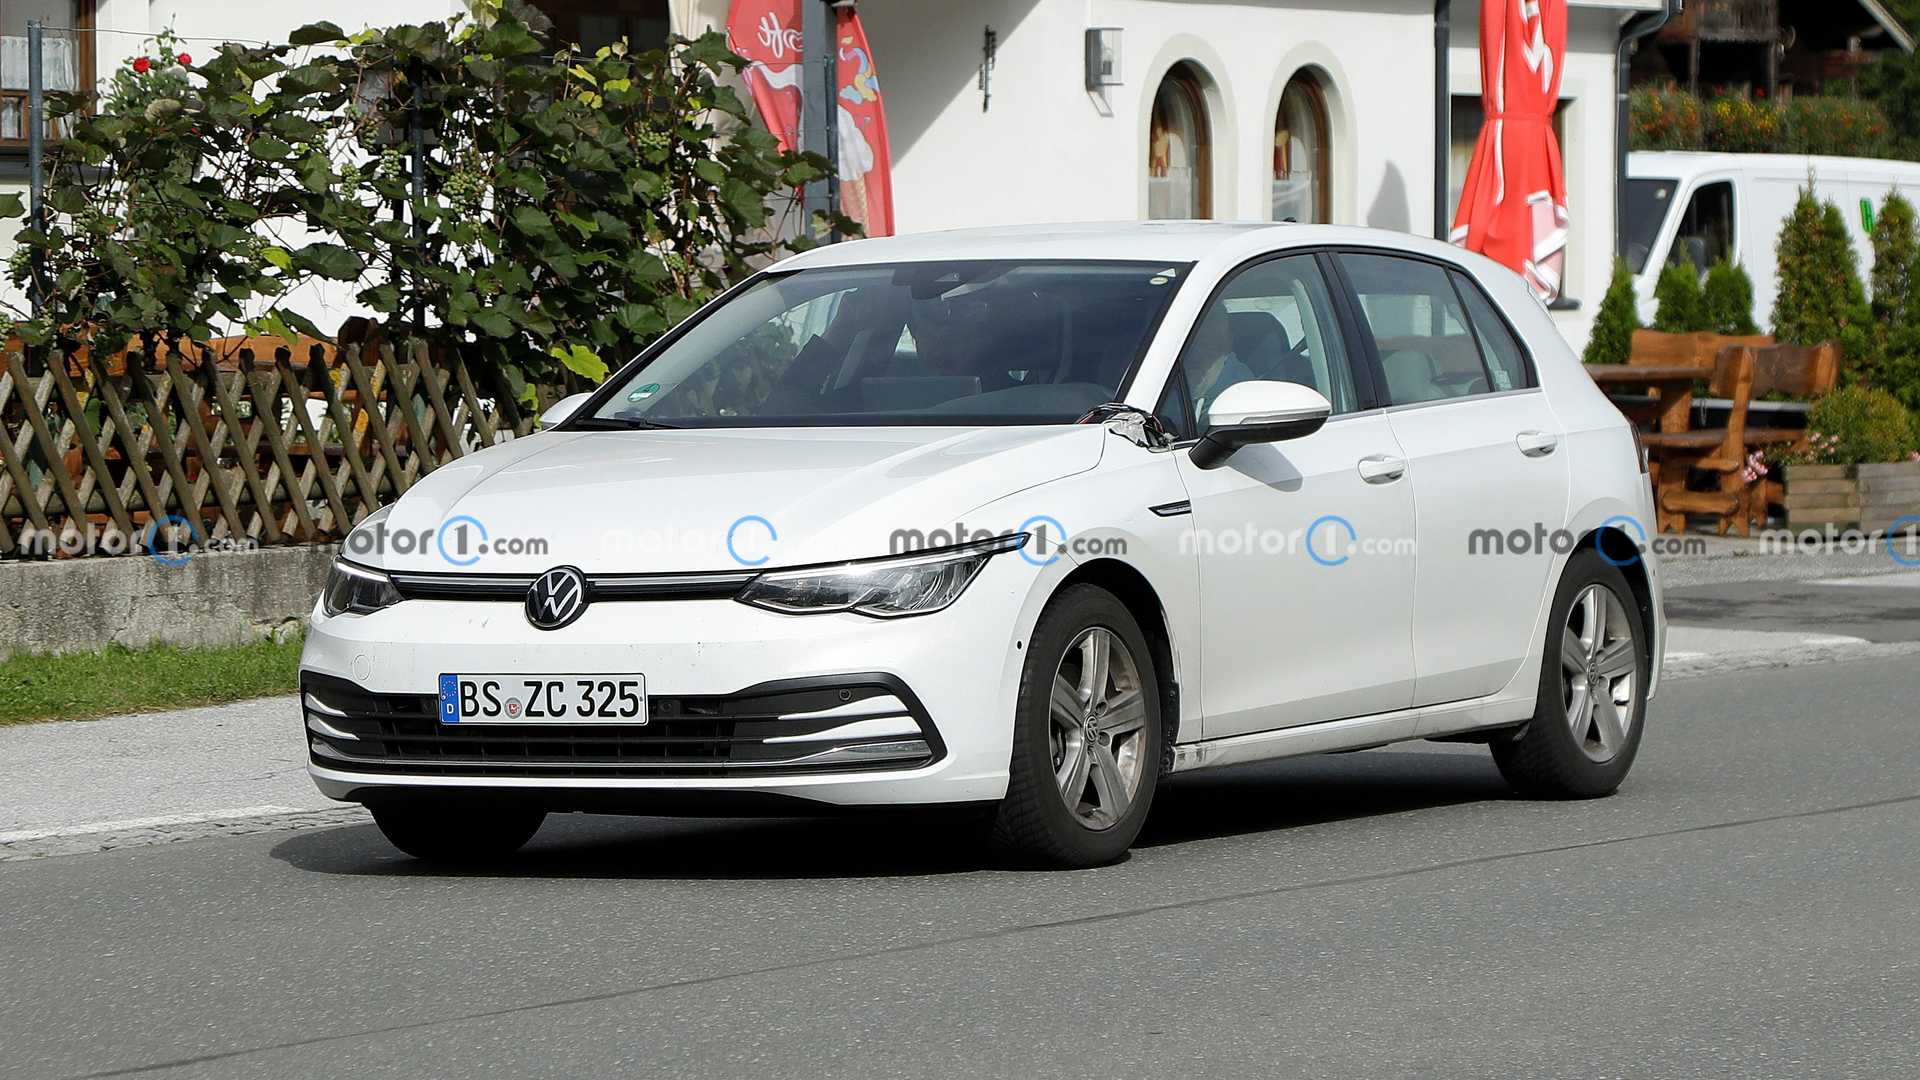 Обновленный VW Golf получит большой сенсорный дисплей